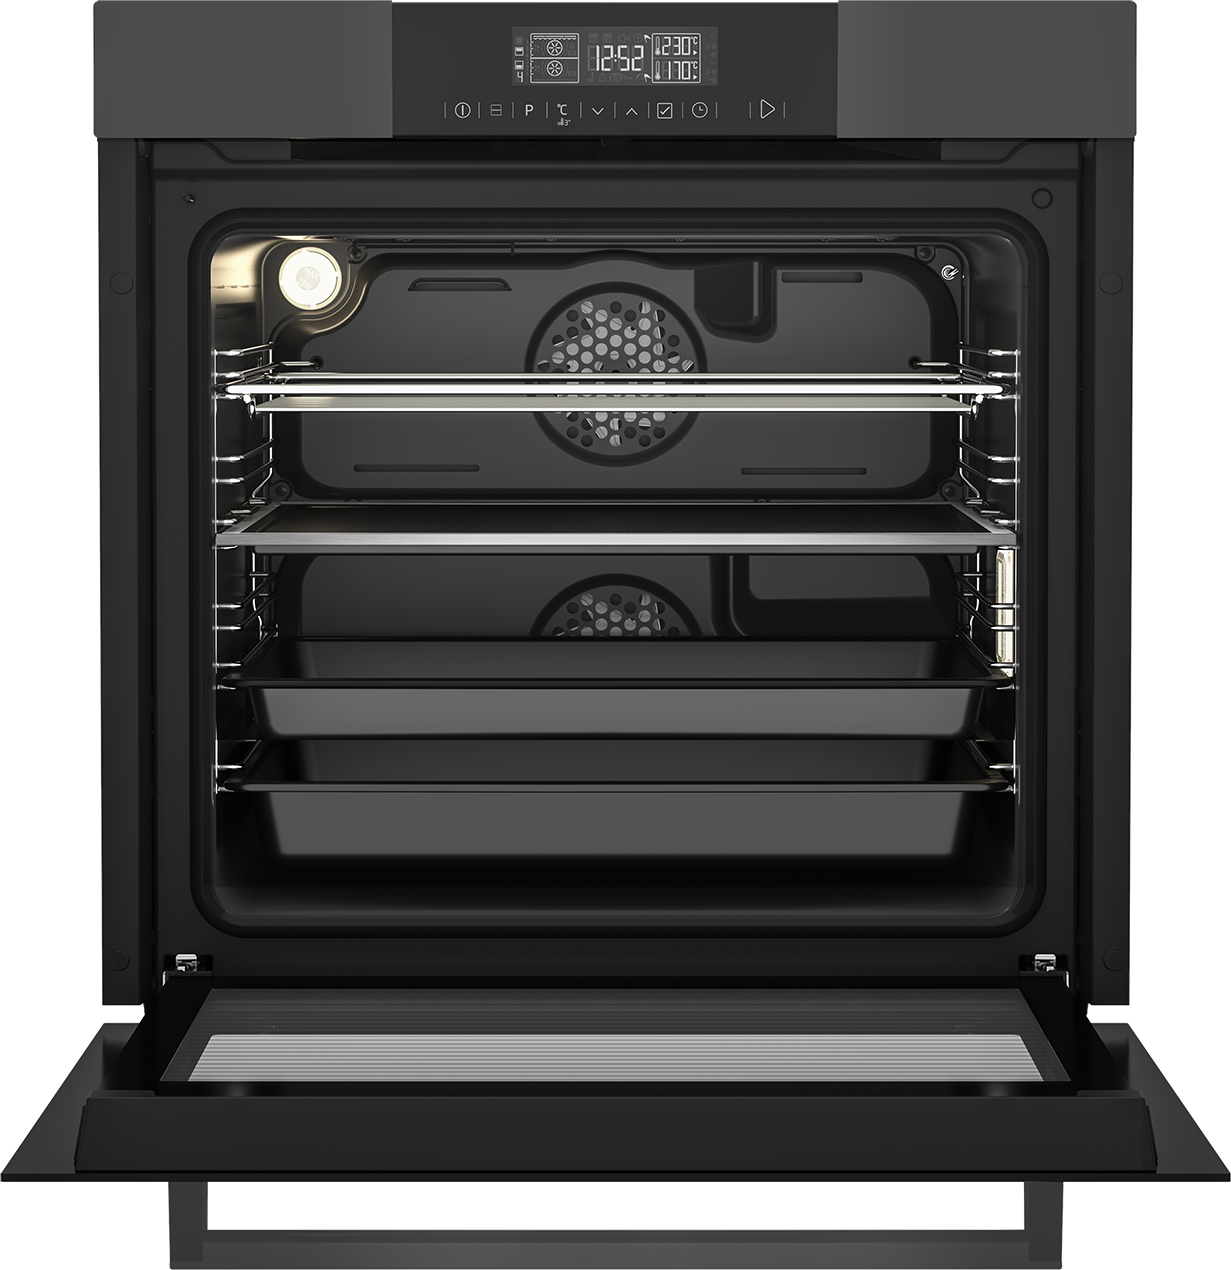 Beko 60cm BI Oven Split & Cook MultiFunction Anthracite Oven - Inox